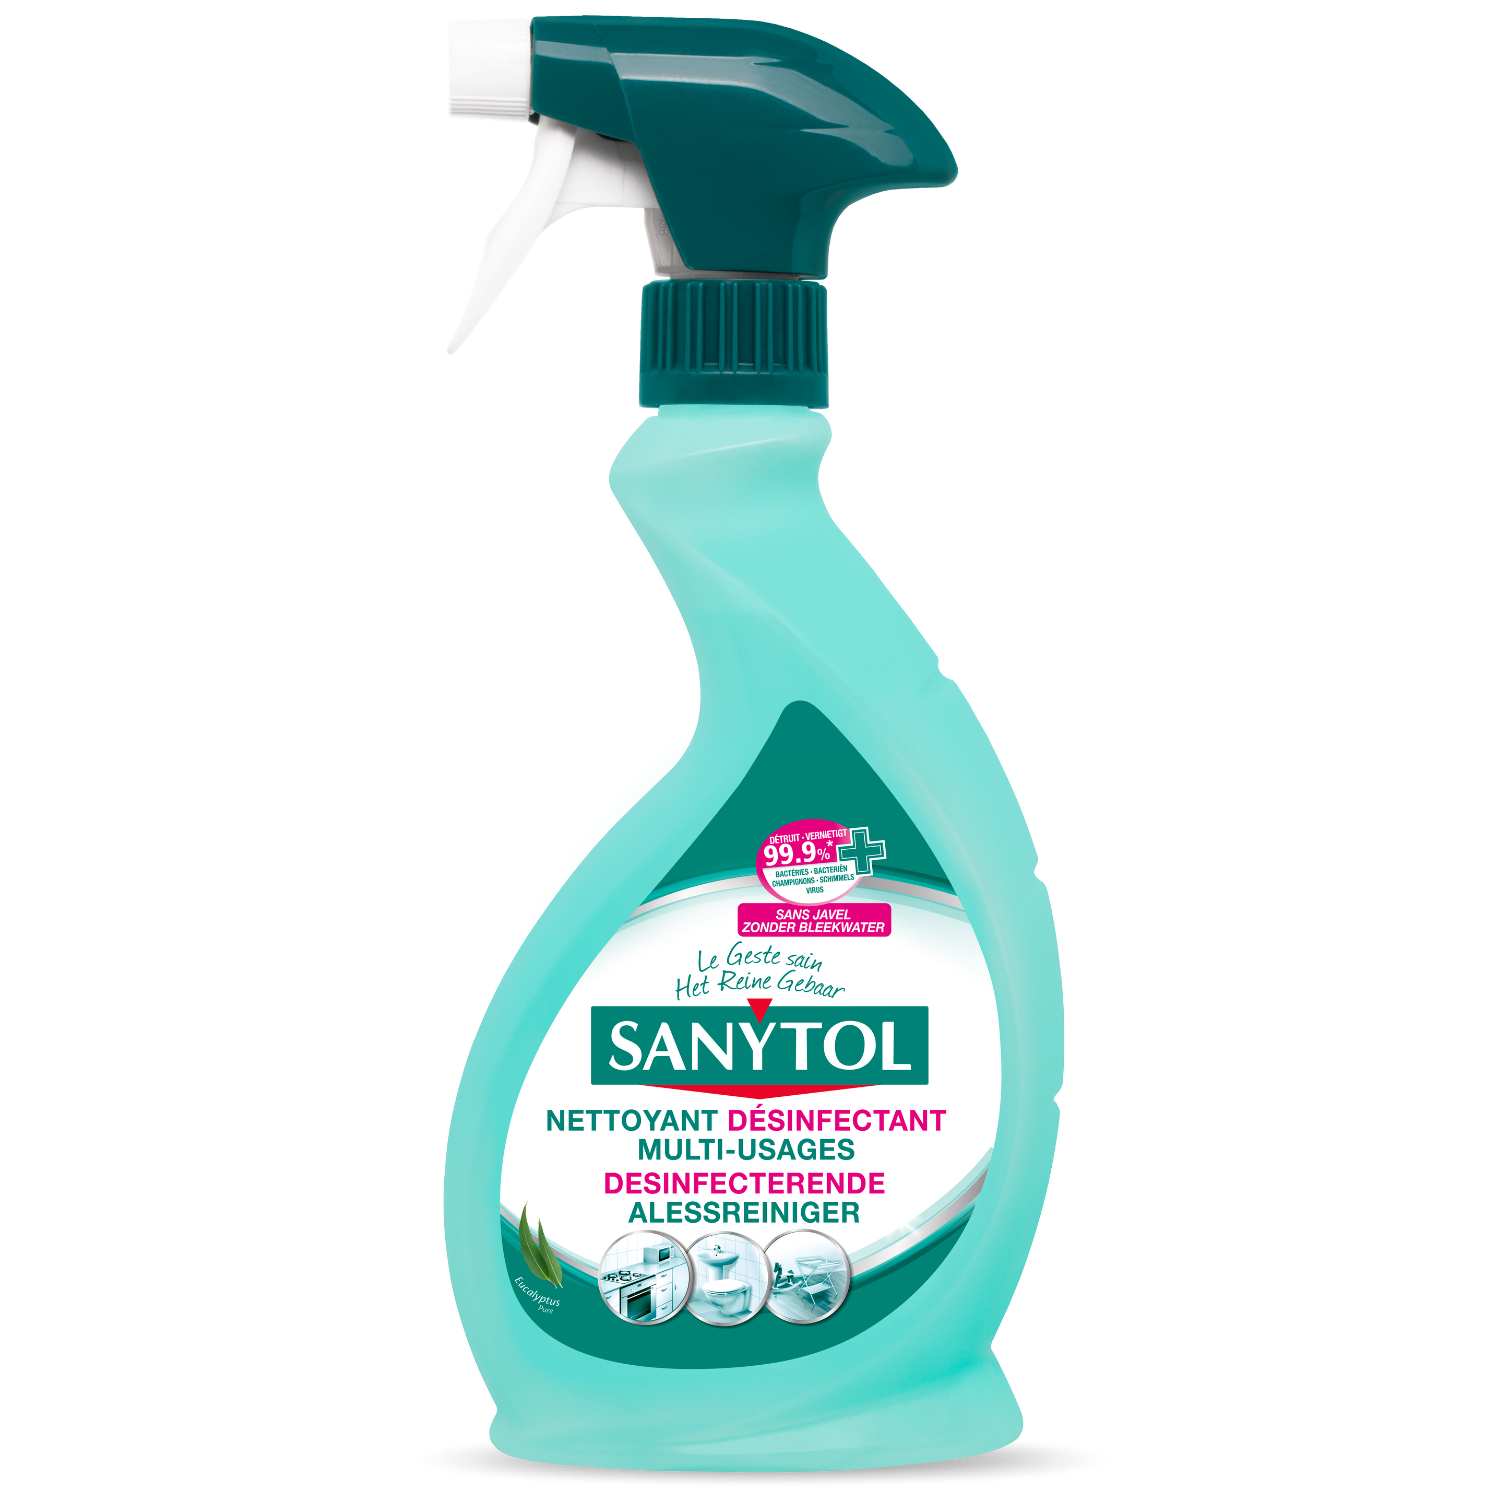 Nettoyant désinfectant multi usages parfum pamplemousse, Sanytol (500 ml)